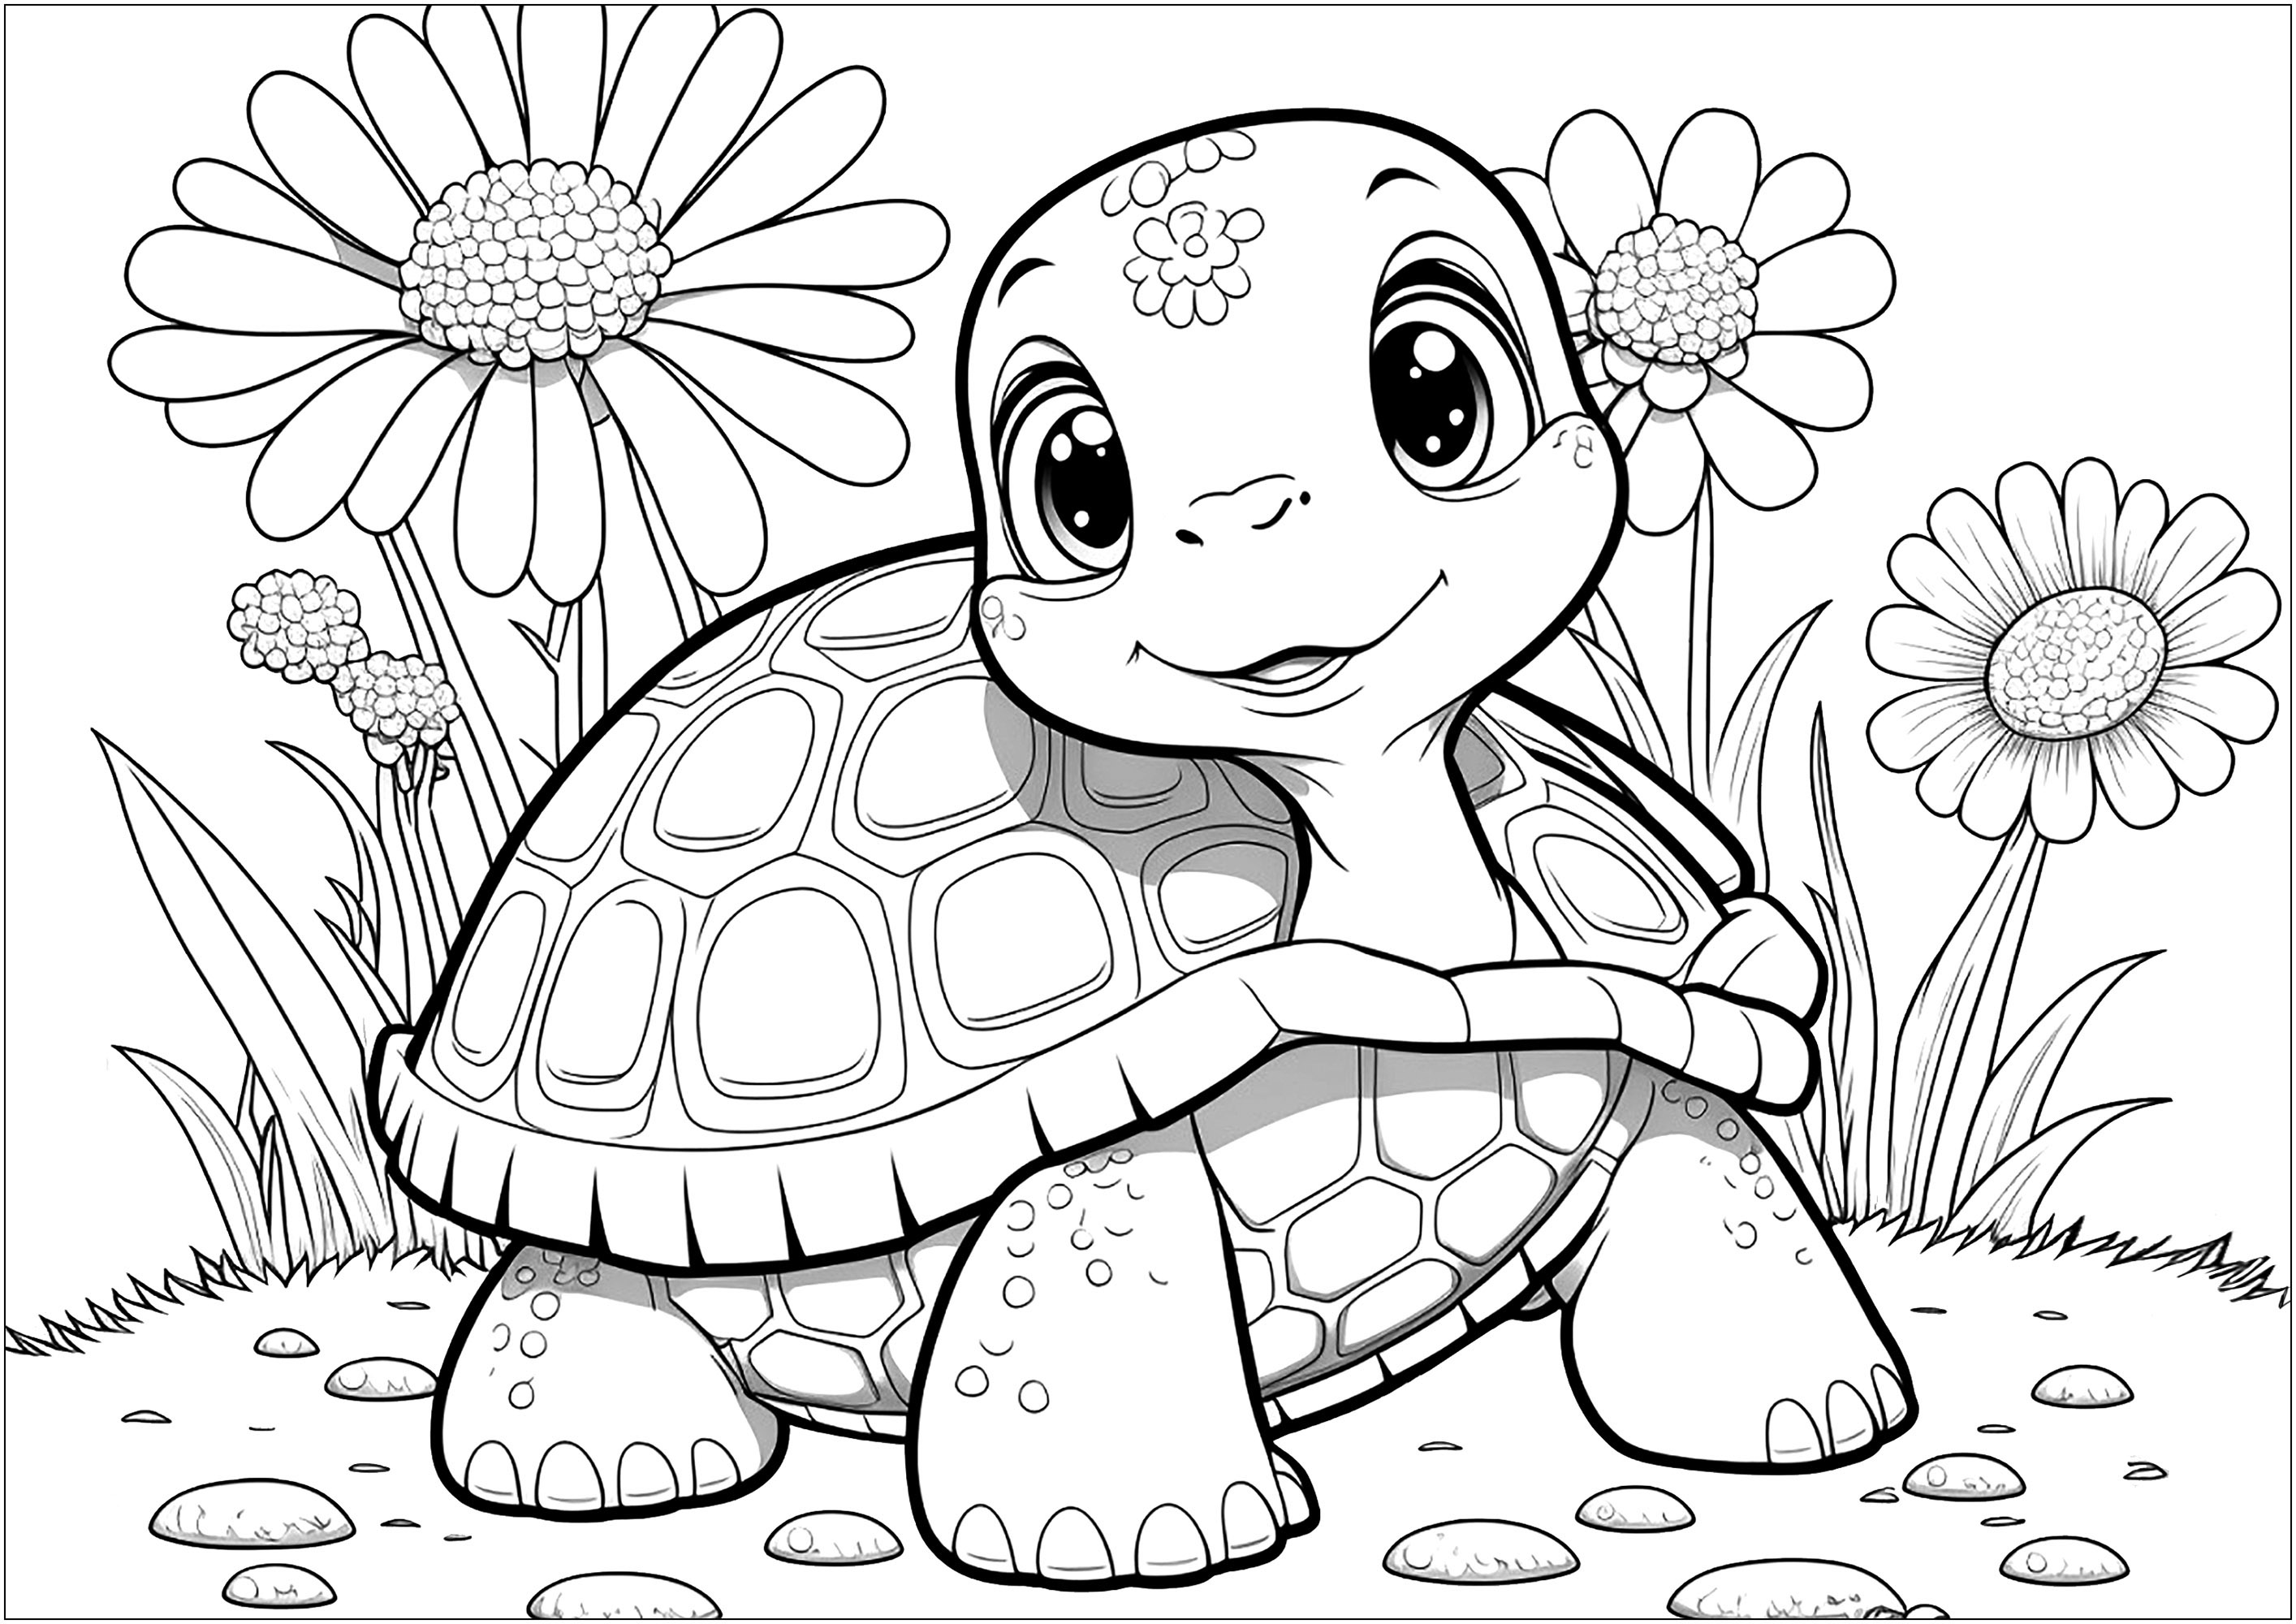 Une adorable petite tortue, et de belles fleurs. Il ne manque que quelques couleurs